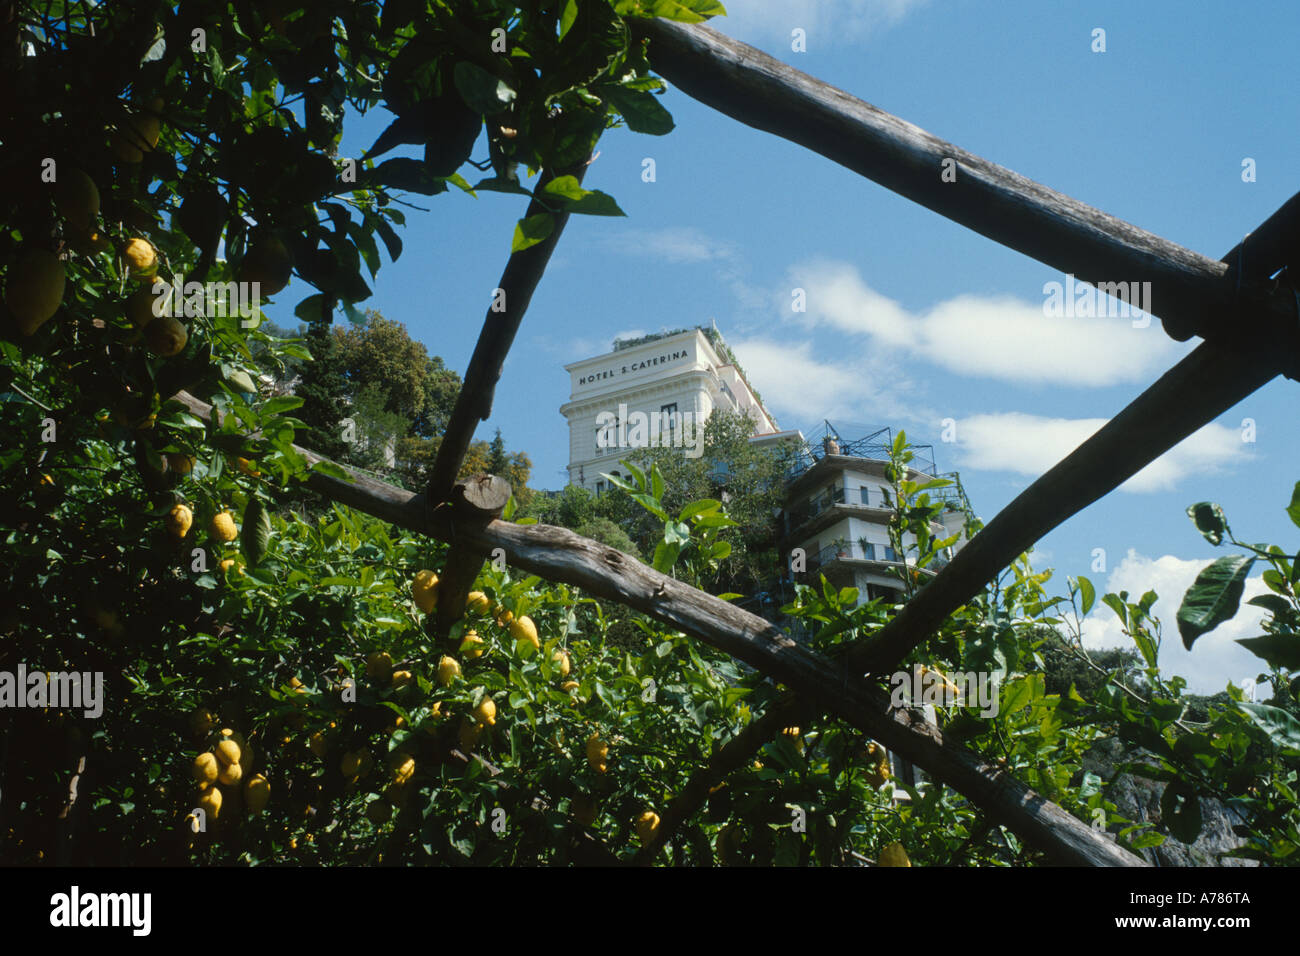 Costiera Amalfitana Hotel Santa Caterina da i terrazzamenti di limoni, Foto Stock